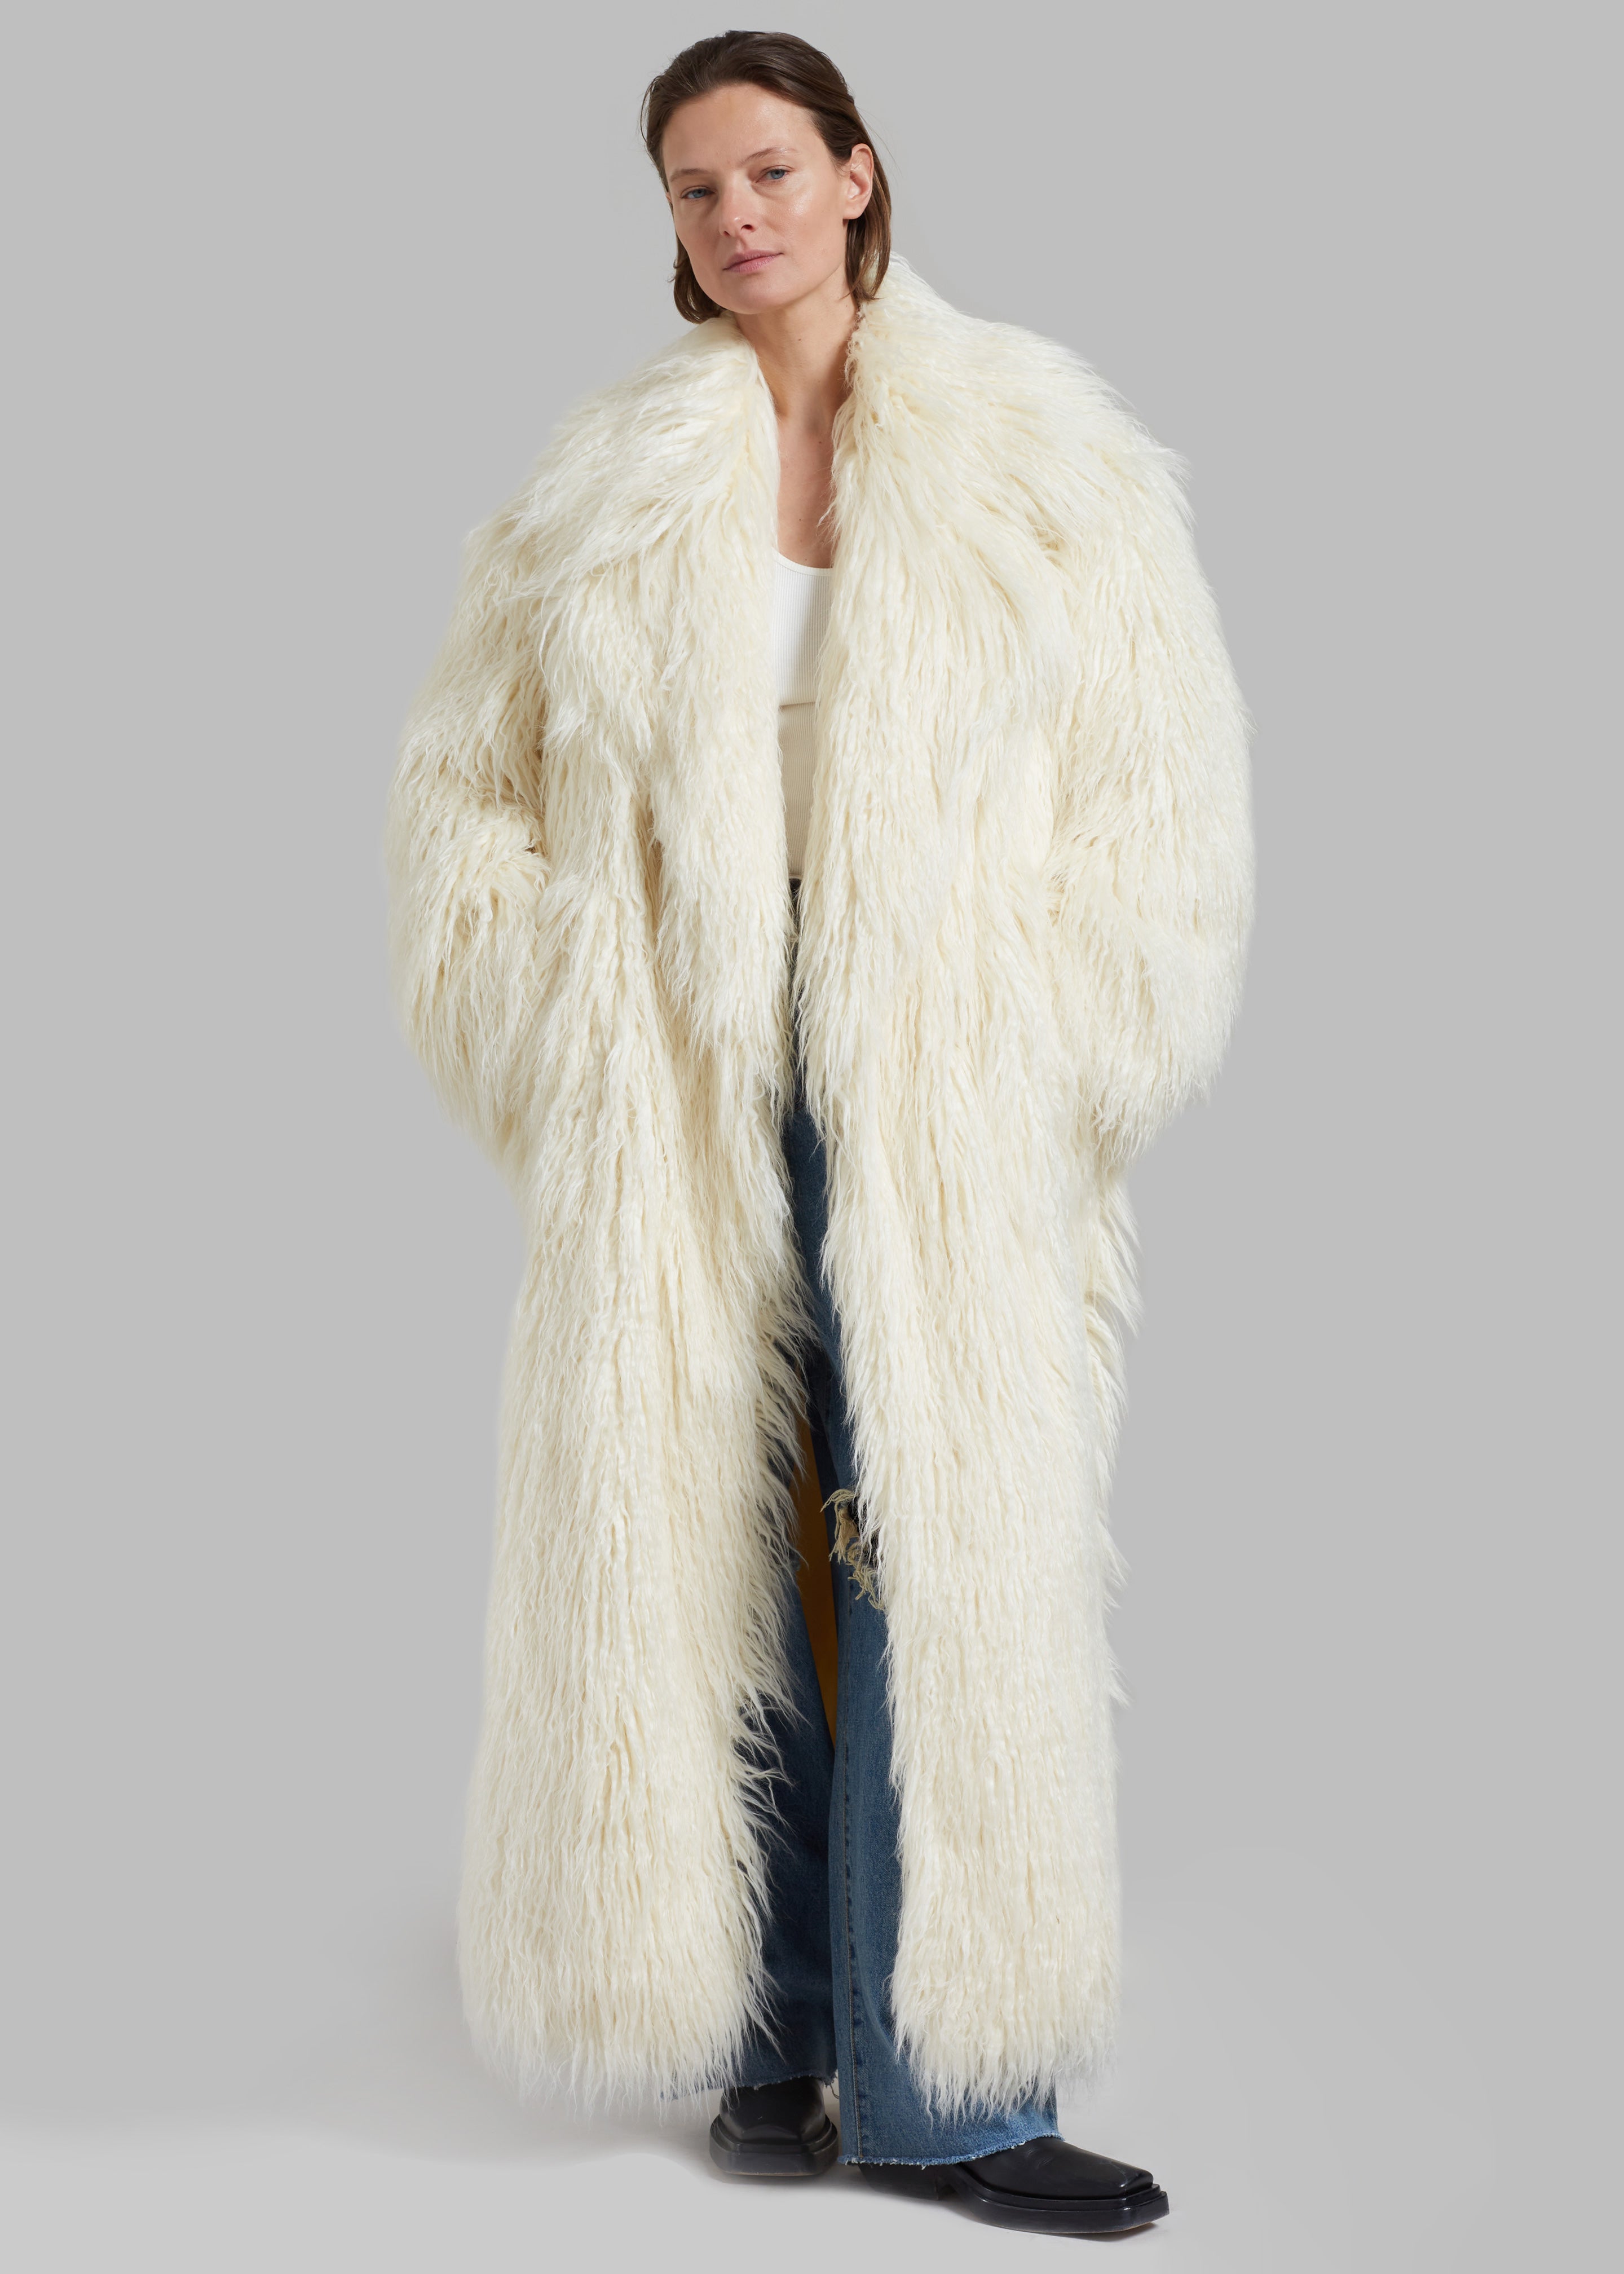 Nicole Long Faux Fur Coat - Off White - 9